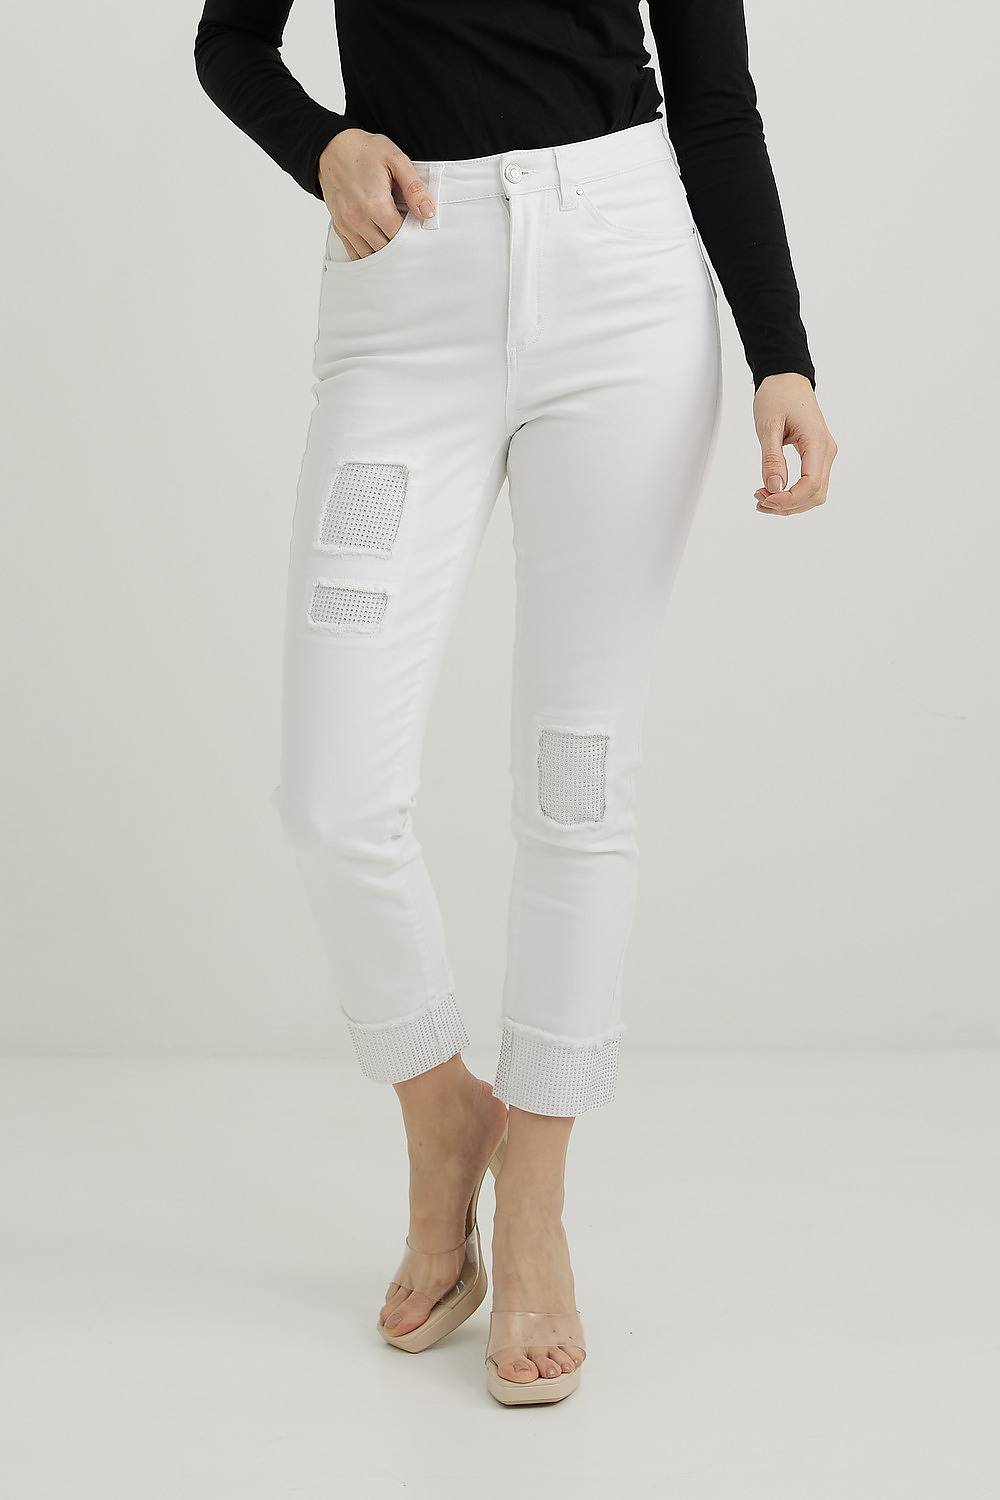 Joseph Ribkoff Embellished Jeans Style 221918. White